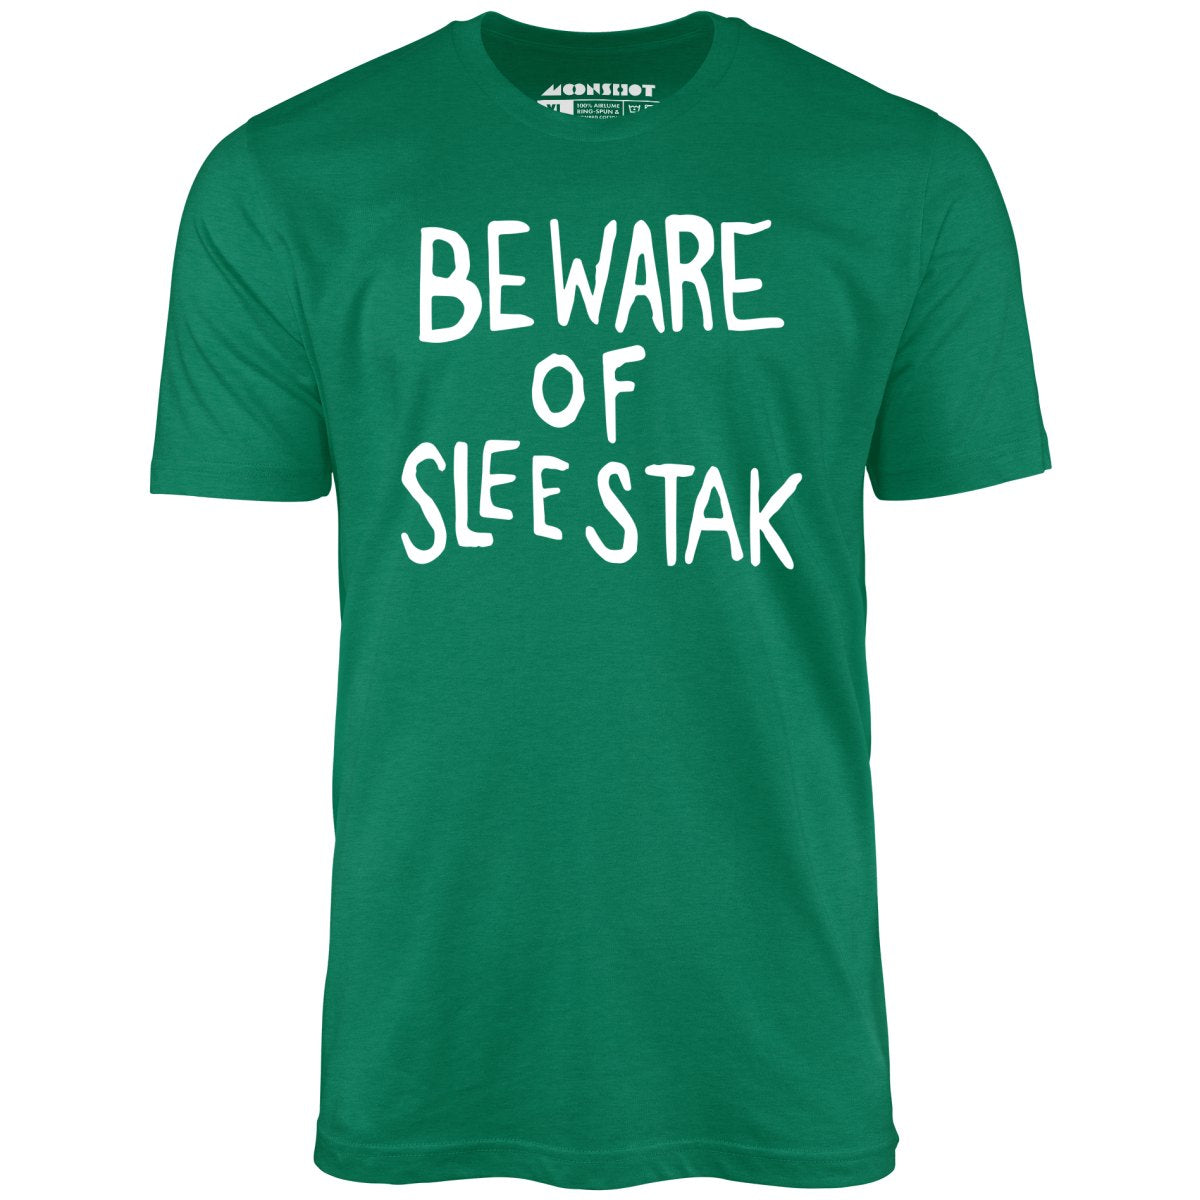 Beware of Sleestak - Unisex T-Shirt